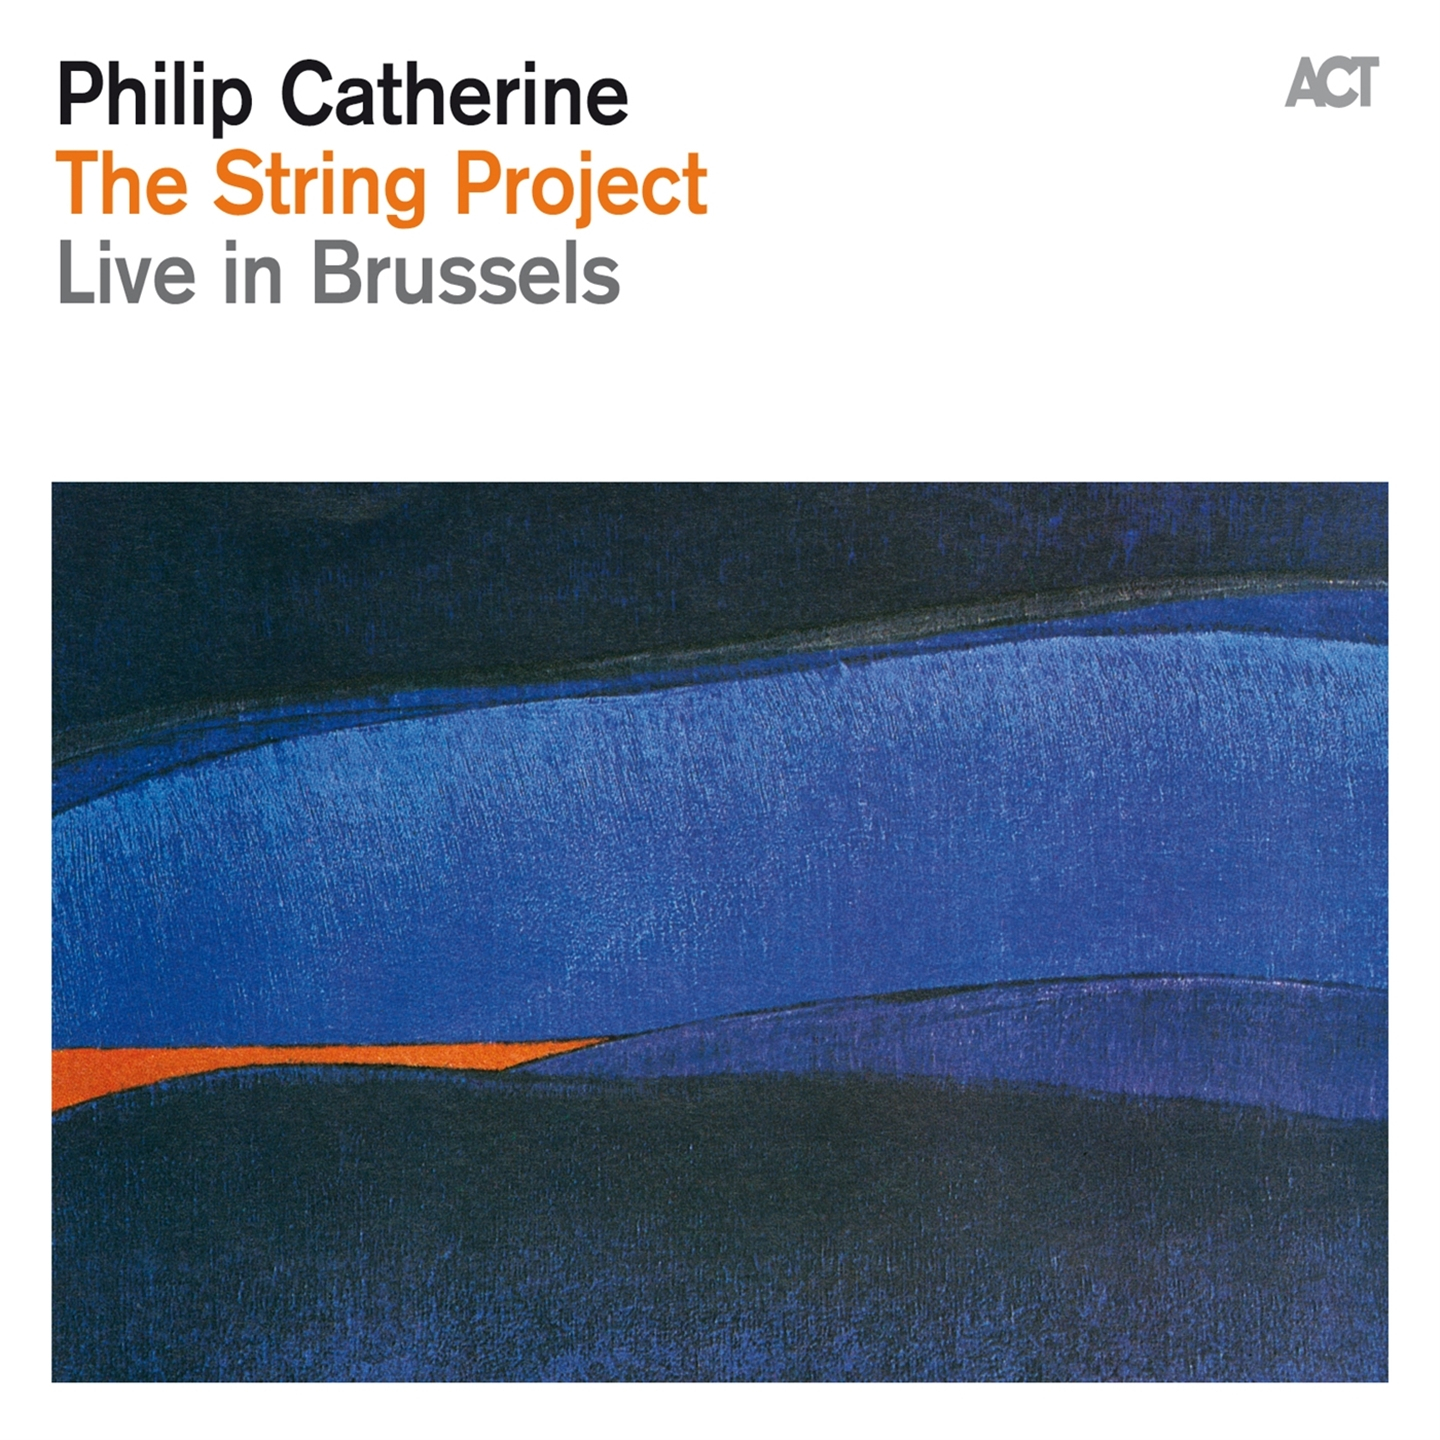 Philip Catherine - The String Project - Bild 1 von 1